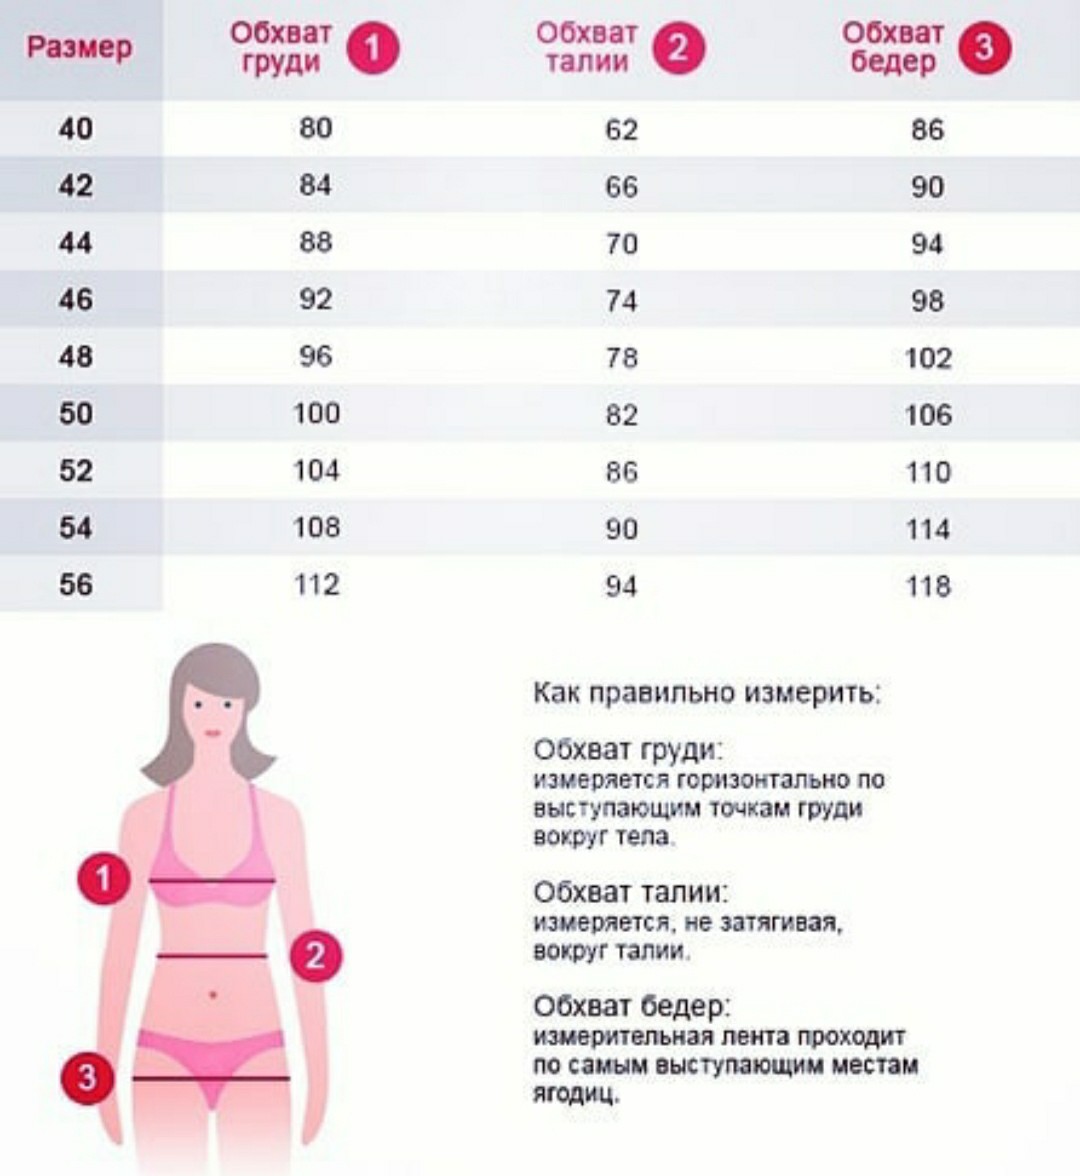 как мерить объем груди у женщин фото 78